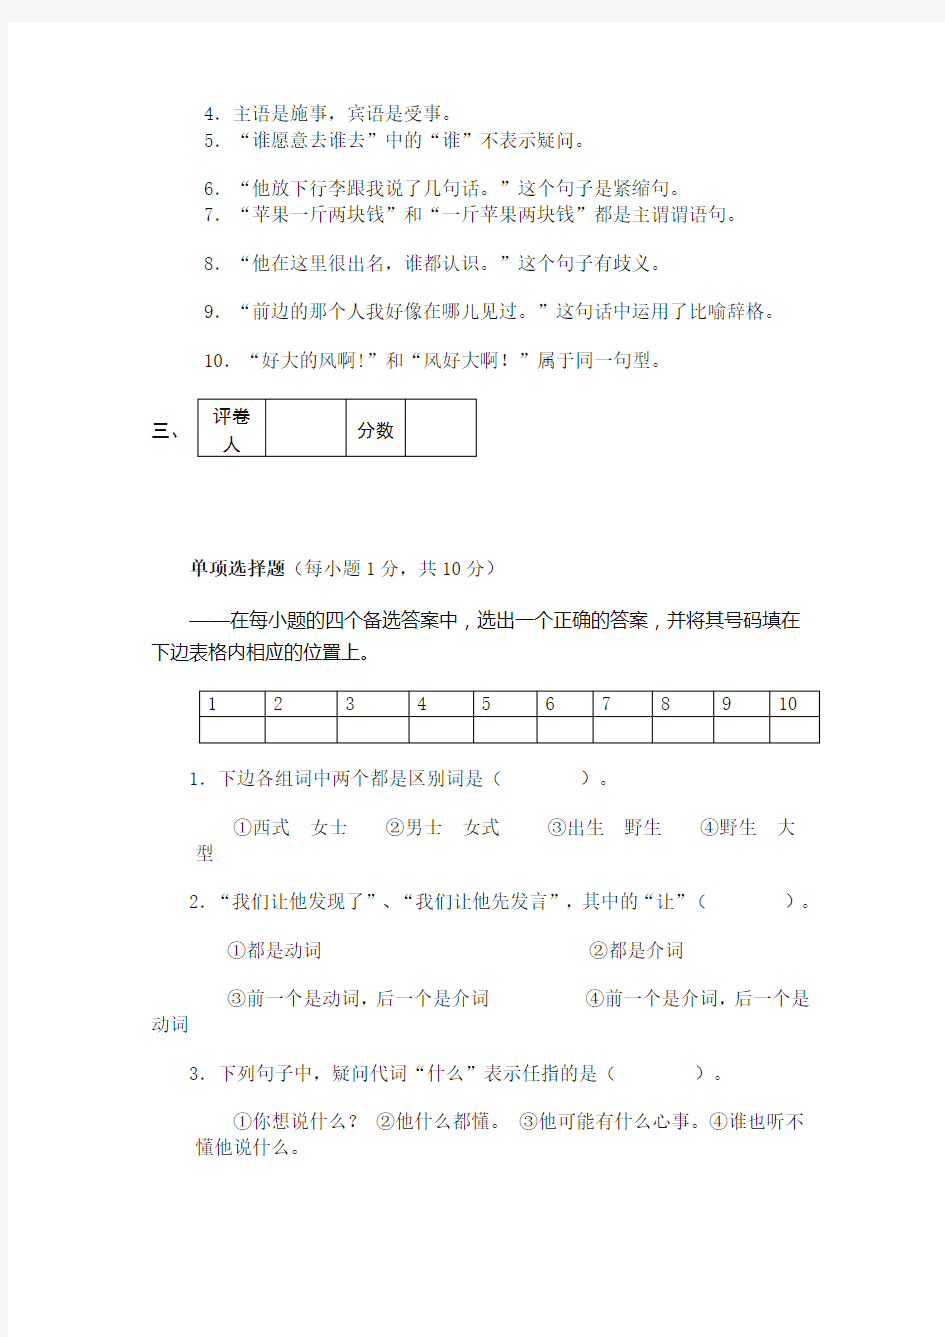 安阳师范学院2007级汉语言文学、对外汉语专业现代汉语课-2007——2008学年度第二学期考试试卷(一)